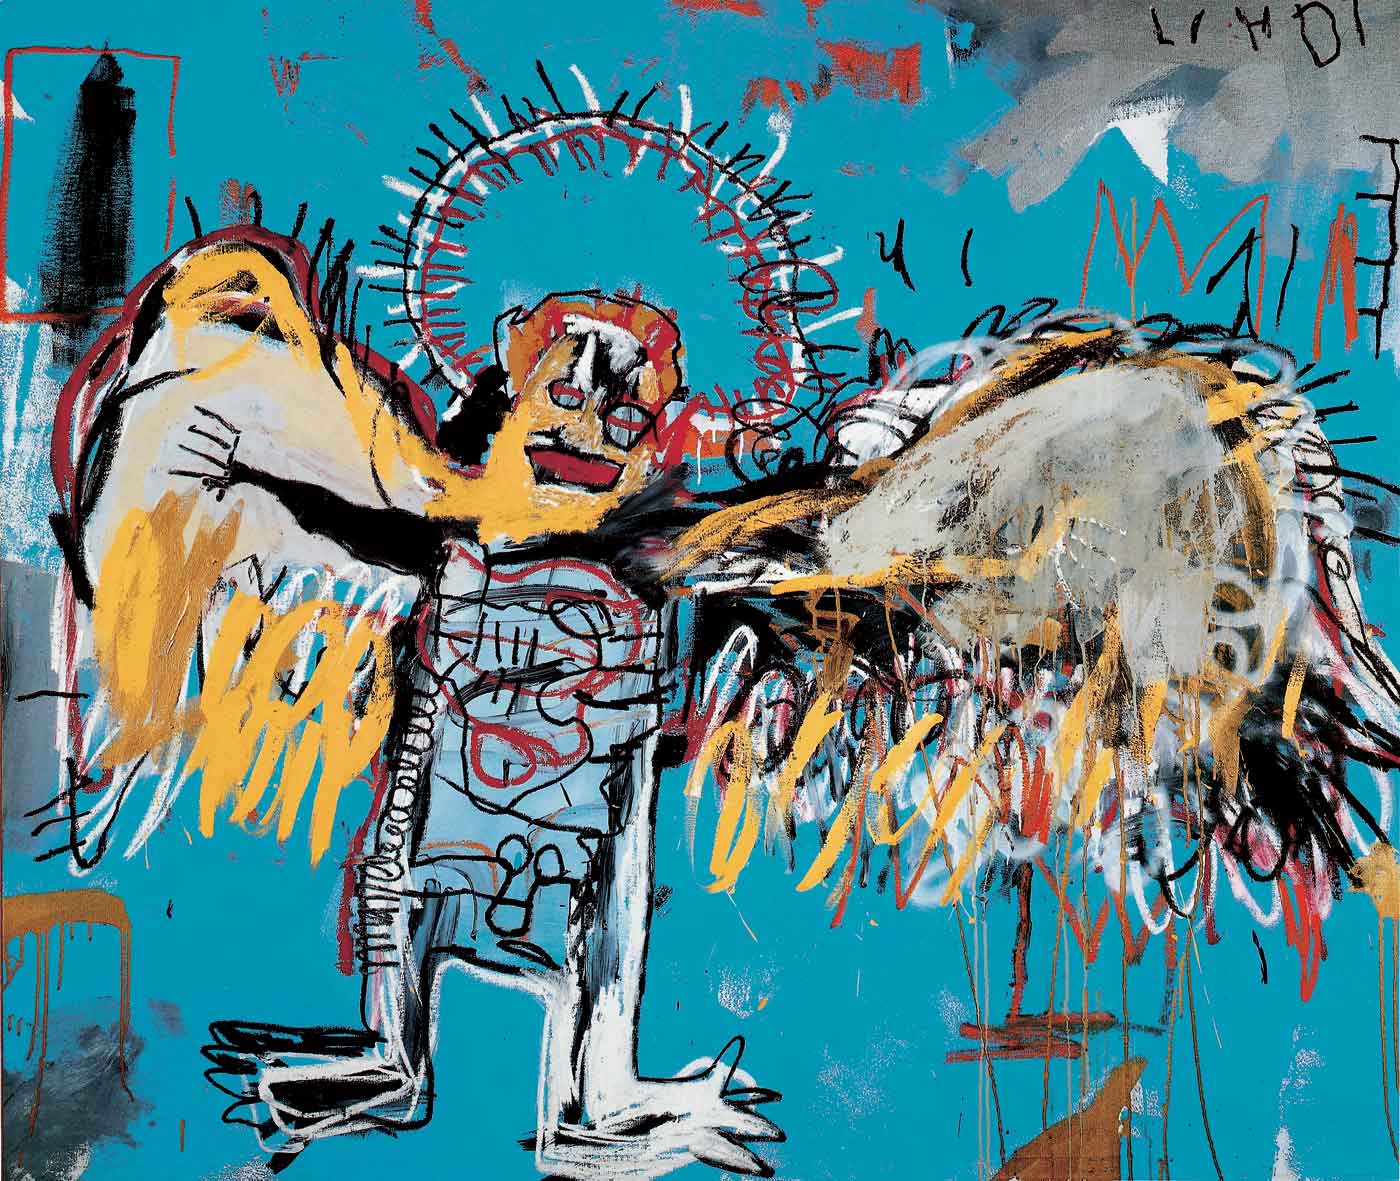 Senza titolo (L'angelo caduto) by Jean-Michel Basquiat - 1981 - 66 x 78 pollici collezione privata